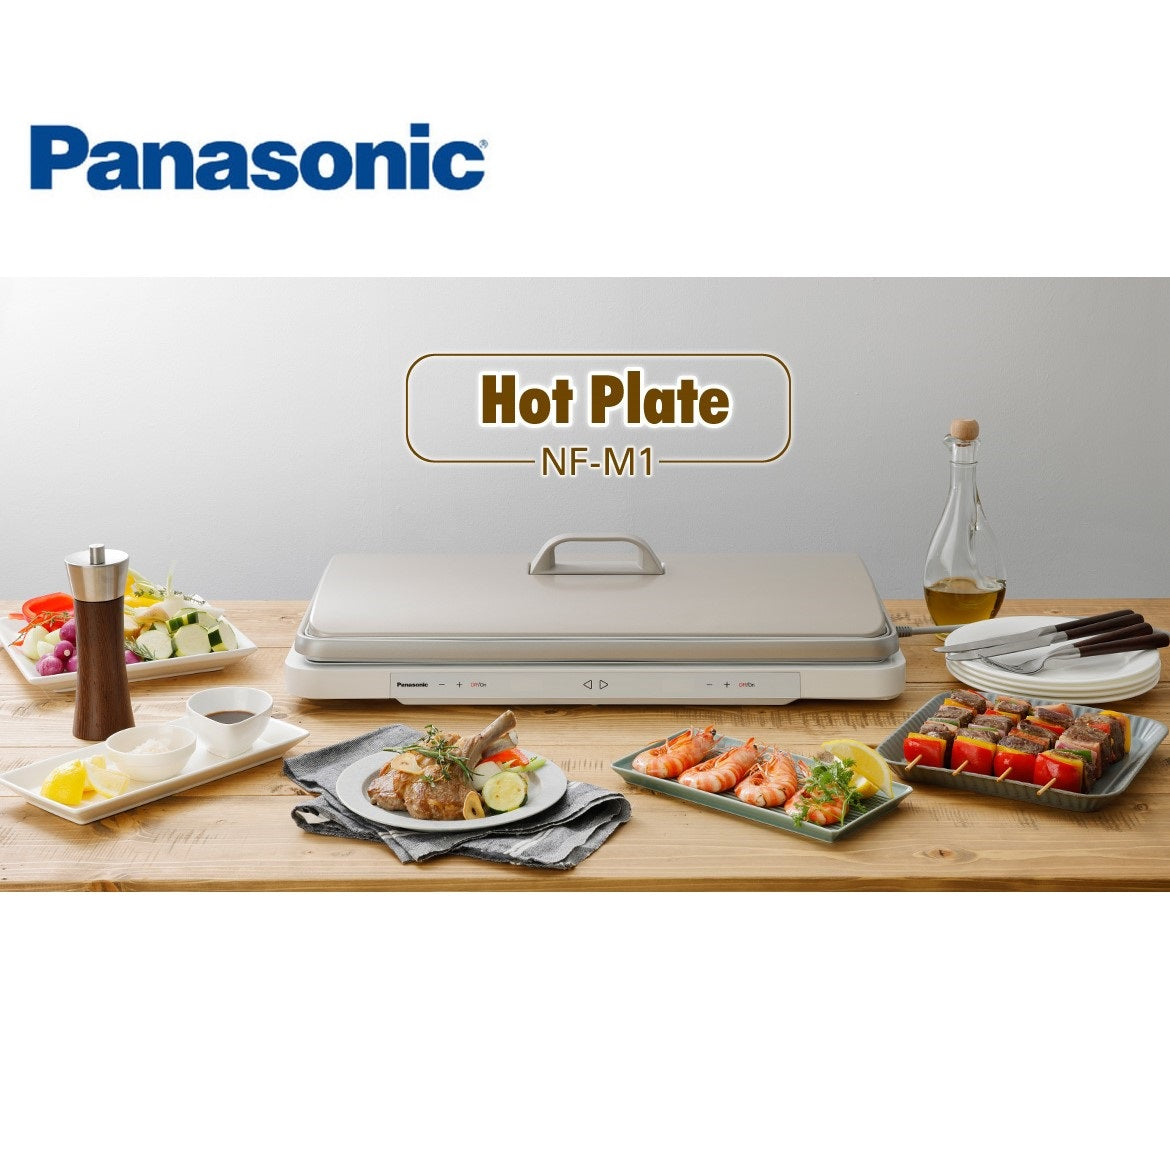 Panasonic Hot Plate NF-M1 3 Pin UK Plug